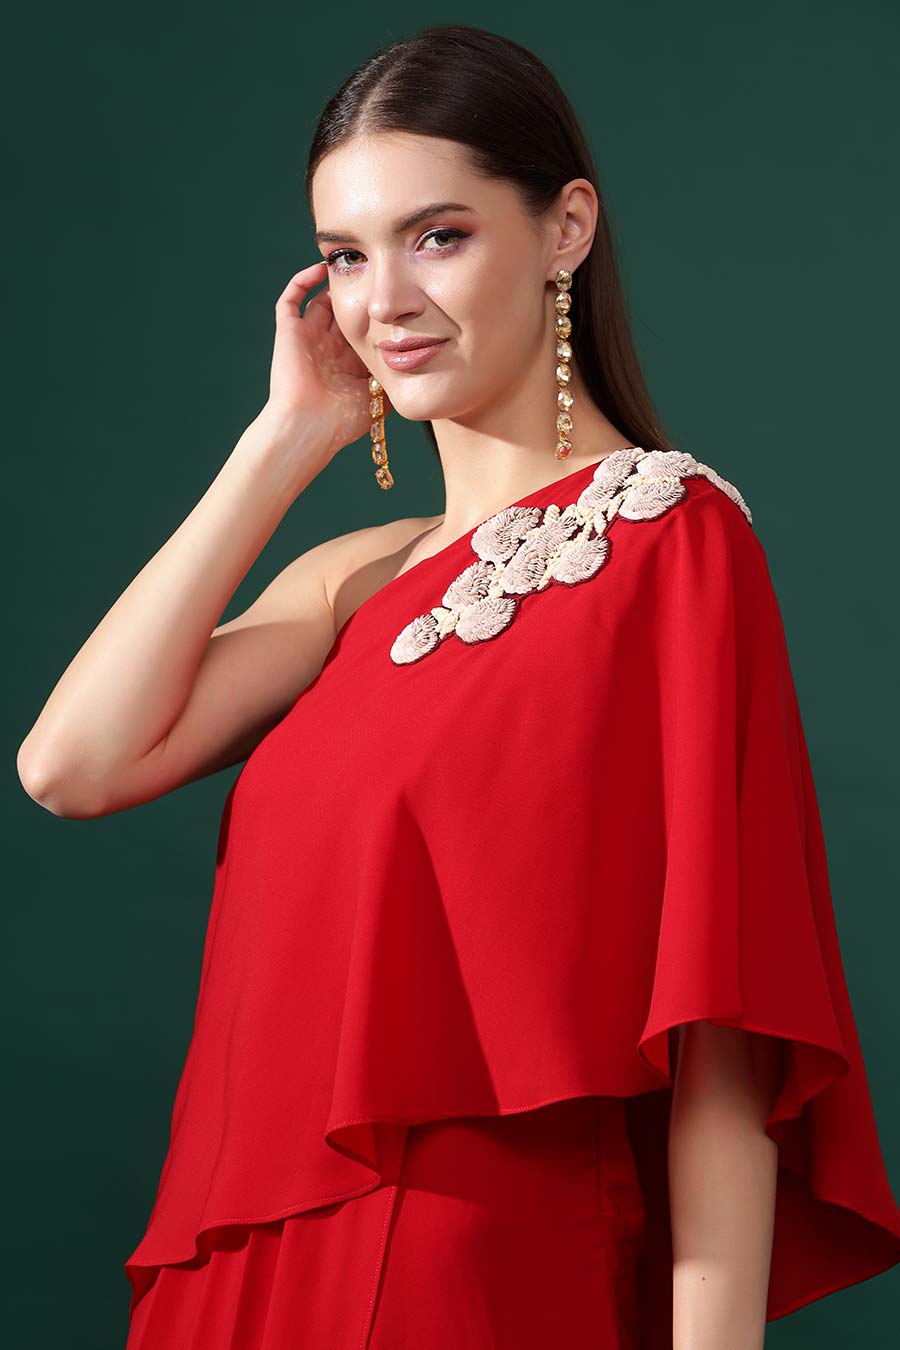 Red One-Shoulder Embellished Drape Dress